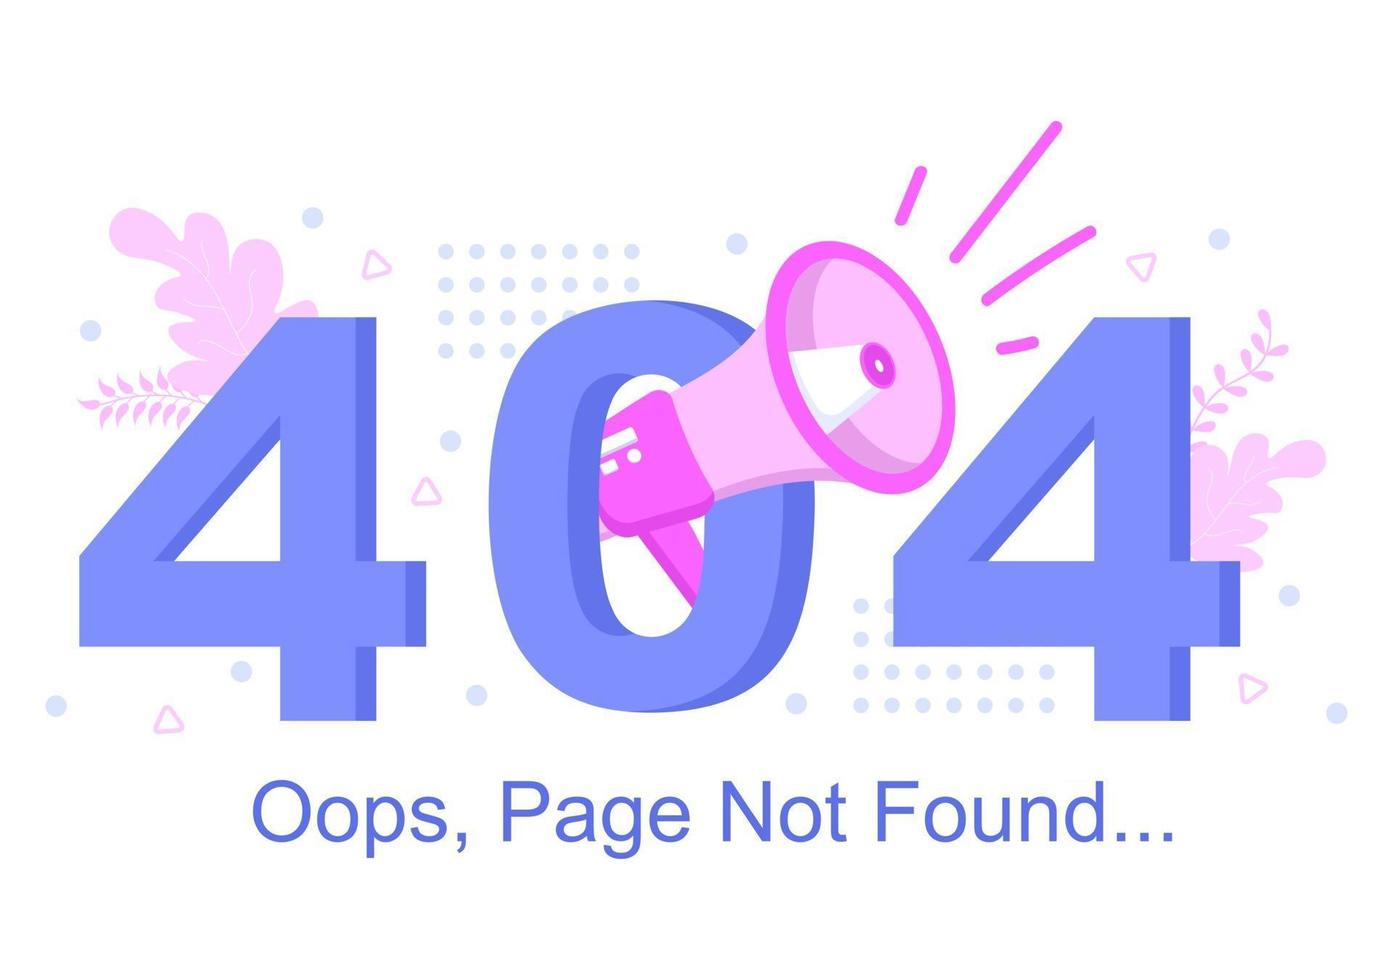 Ilustração em vetor erro 404 e página não encontrada